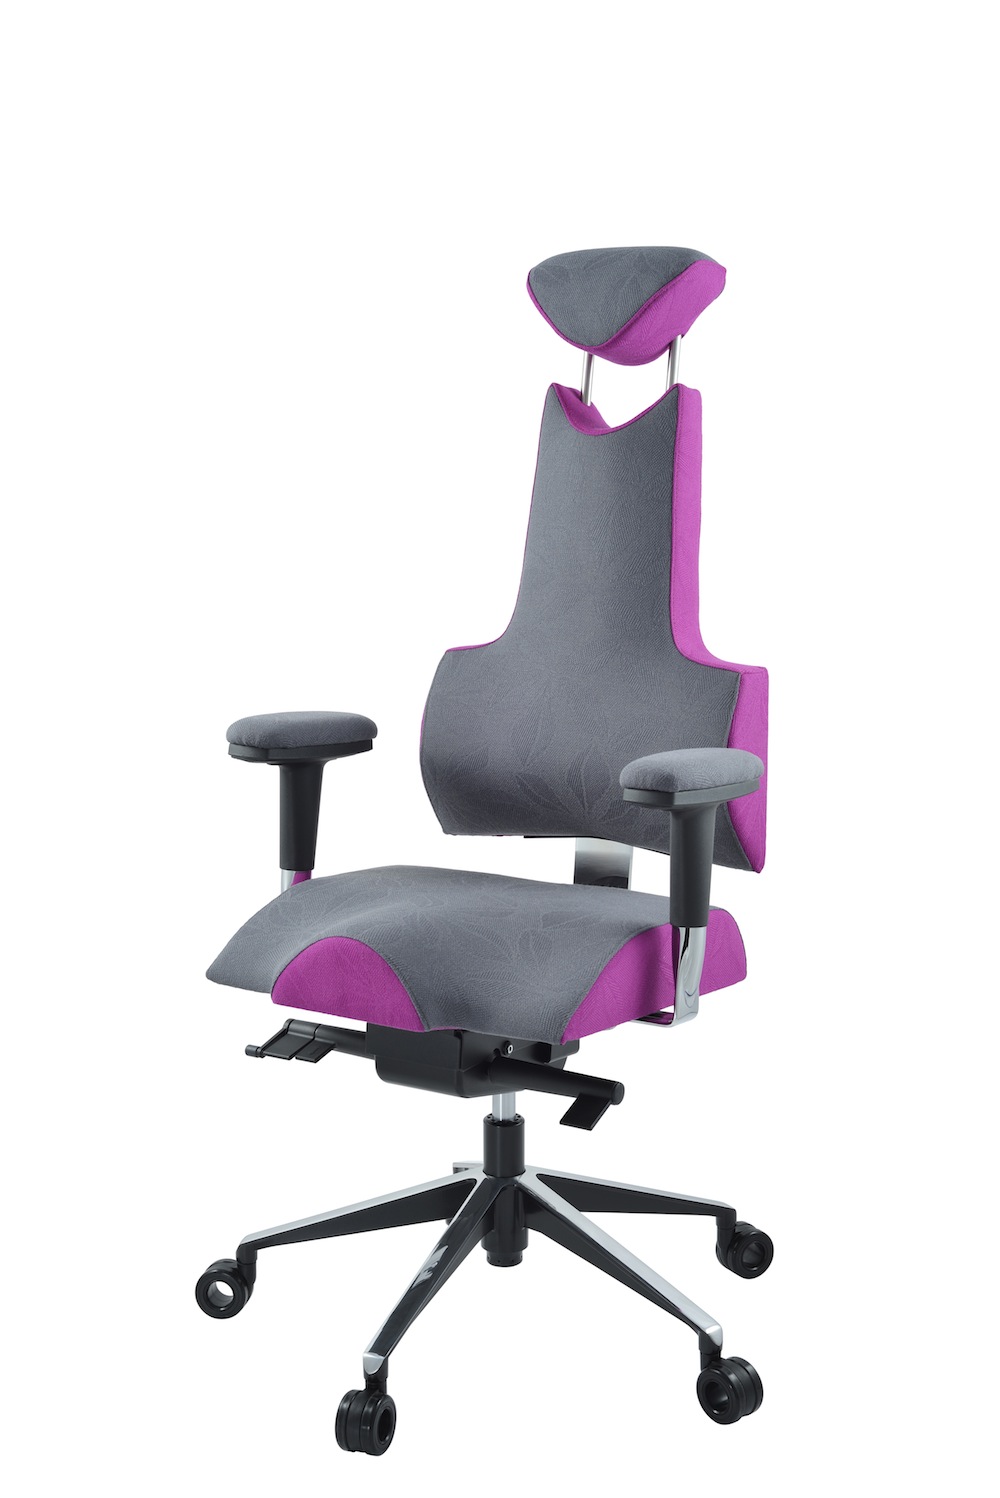 Kancelářské židle Therapia a Sitness, dlouhé sezení bez bolesti zad